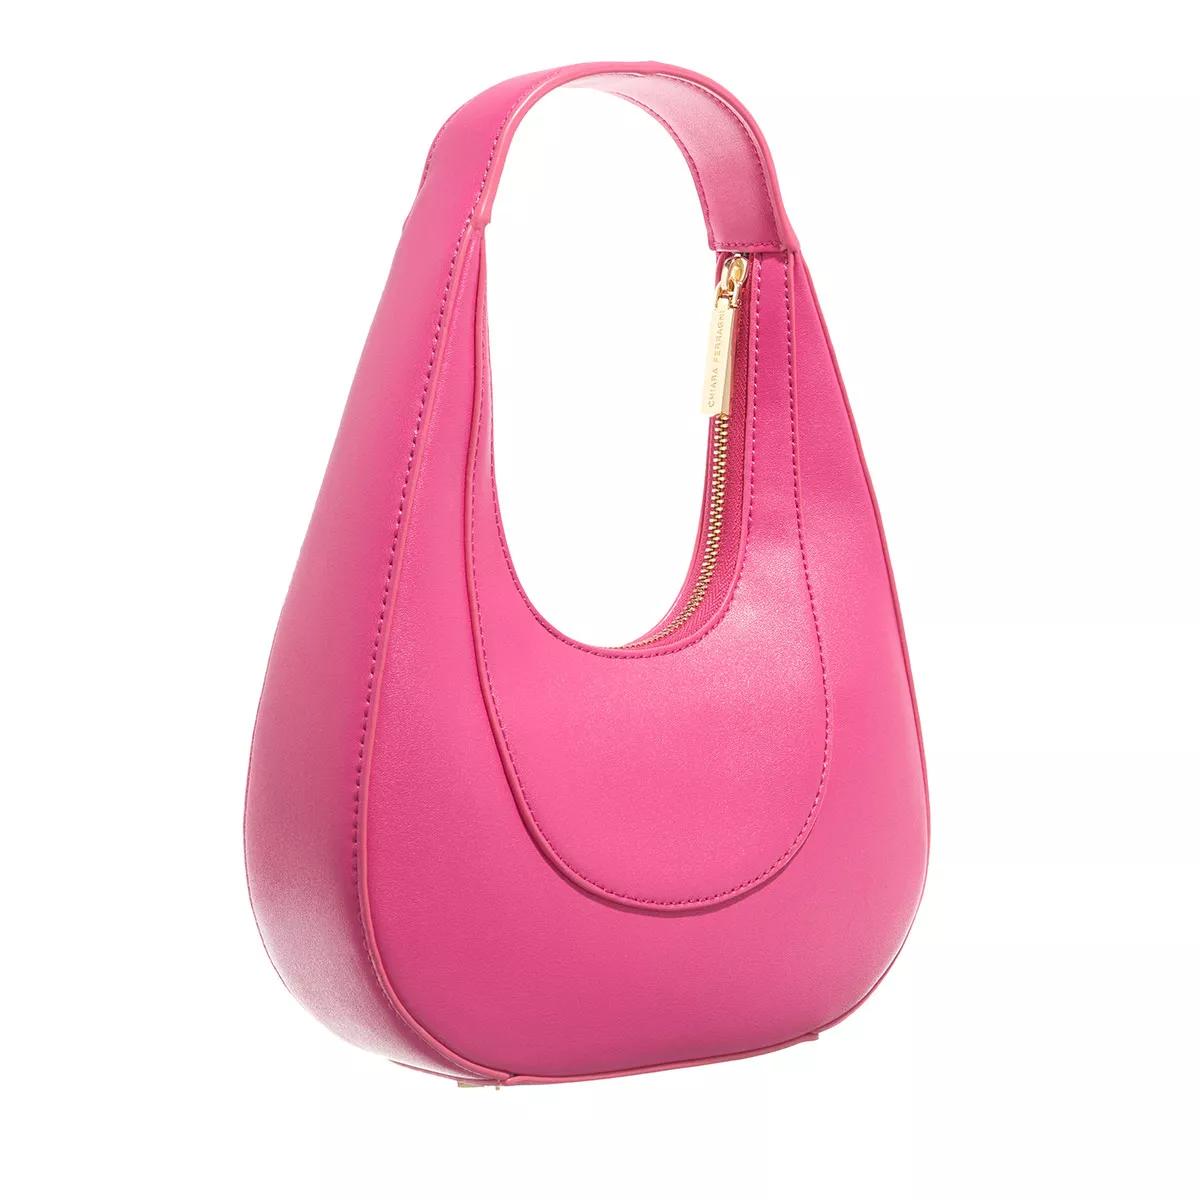 Chiara Ferragni Hobo bags Range G Golden Eye Star Sketch 01 Bags in roze